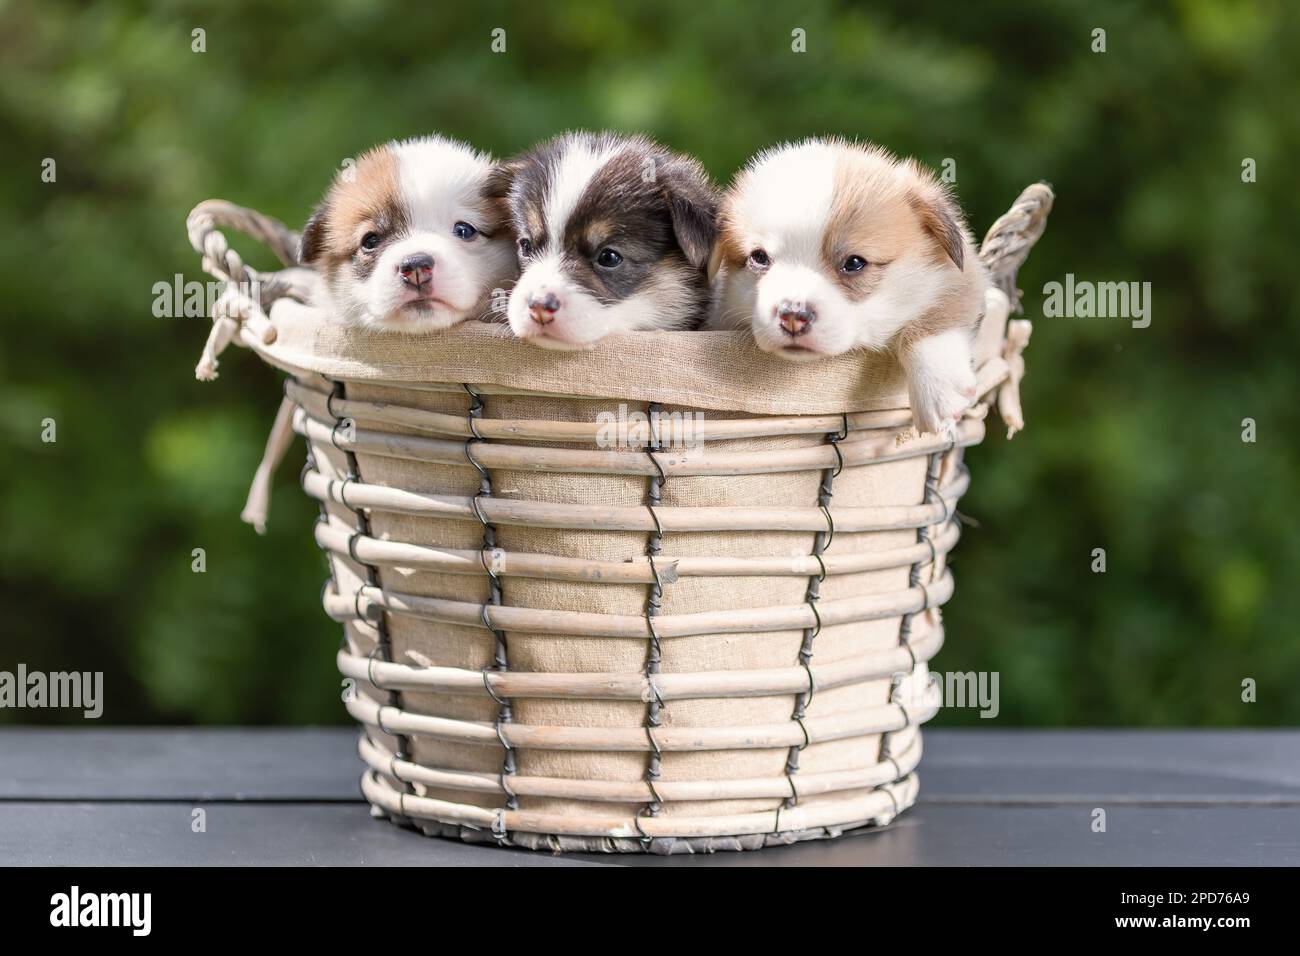 Trois petits chiots de corgi gallois pembroke race chien assis ensemble dans le panier à l'extérieur en été Banque D'Images